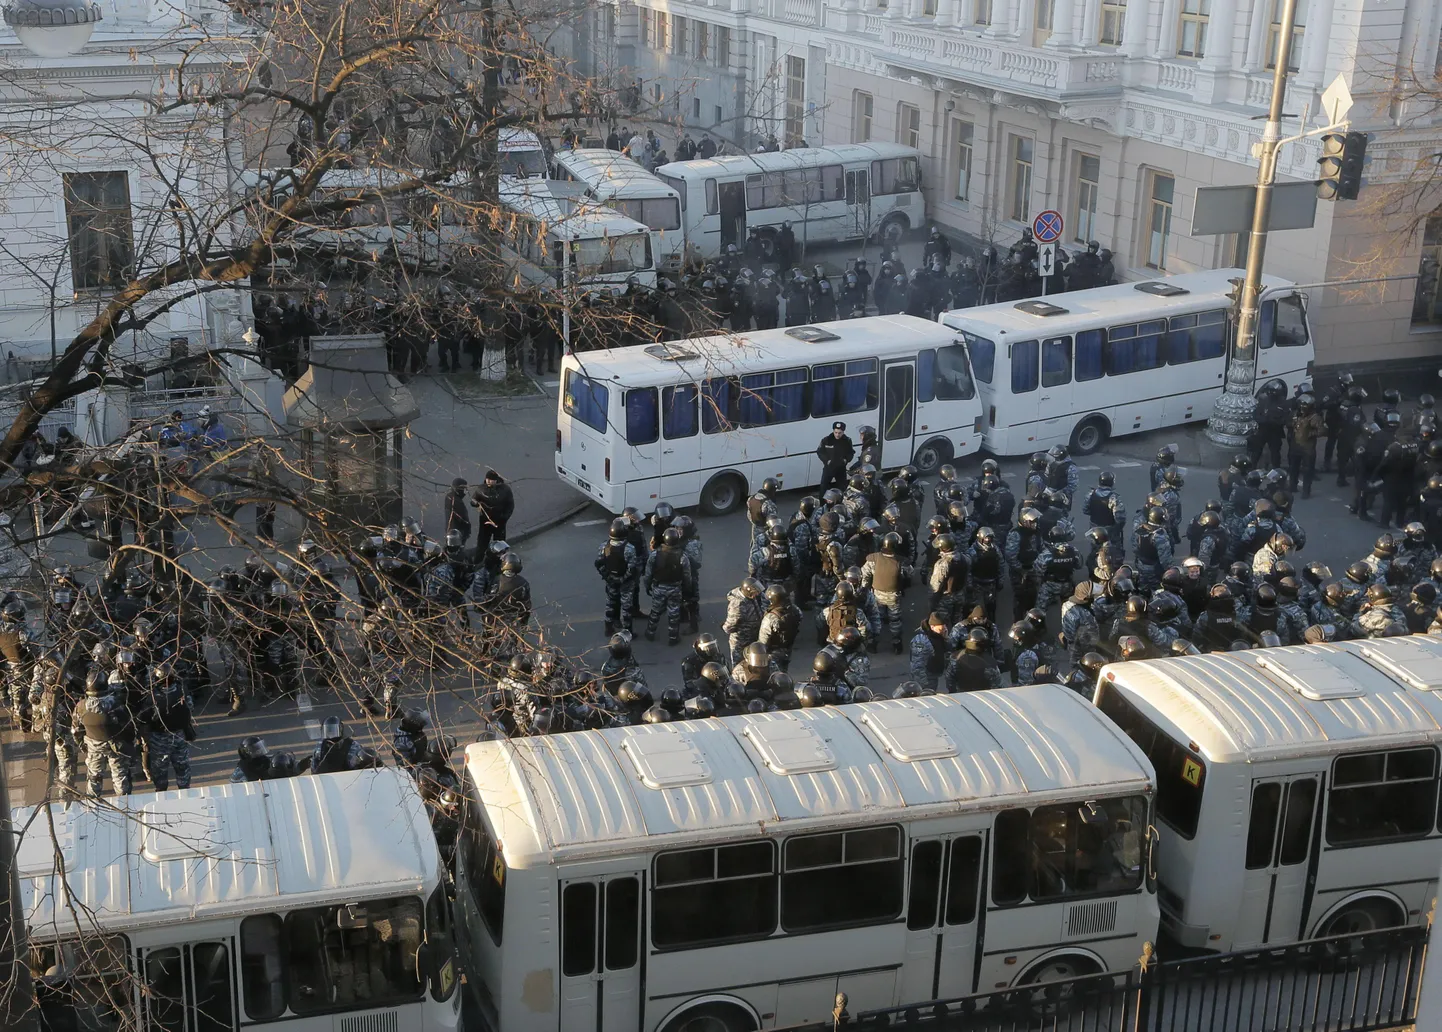 Märulimiilitsad ja nende bussid ülemraada hoone juures päeval, kui president sõidab visiidile Hiinasse, et seal Ukraina asja ajada.